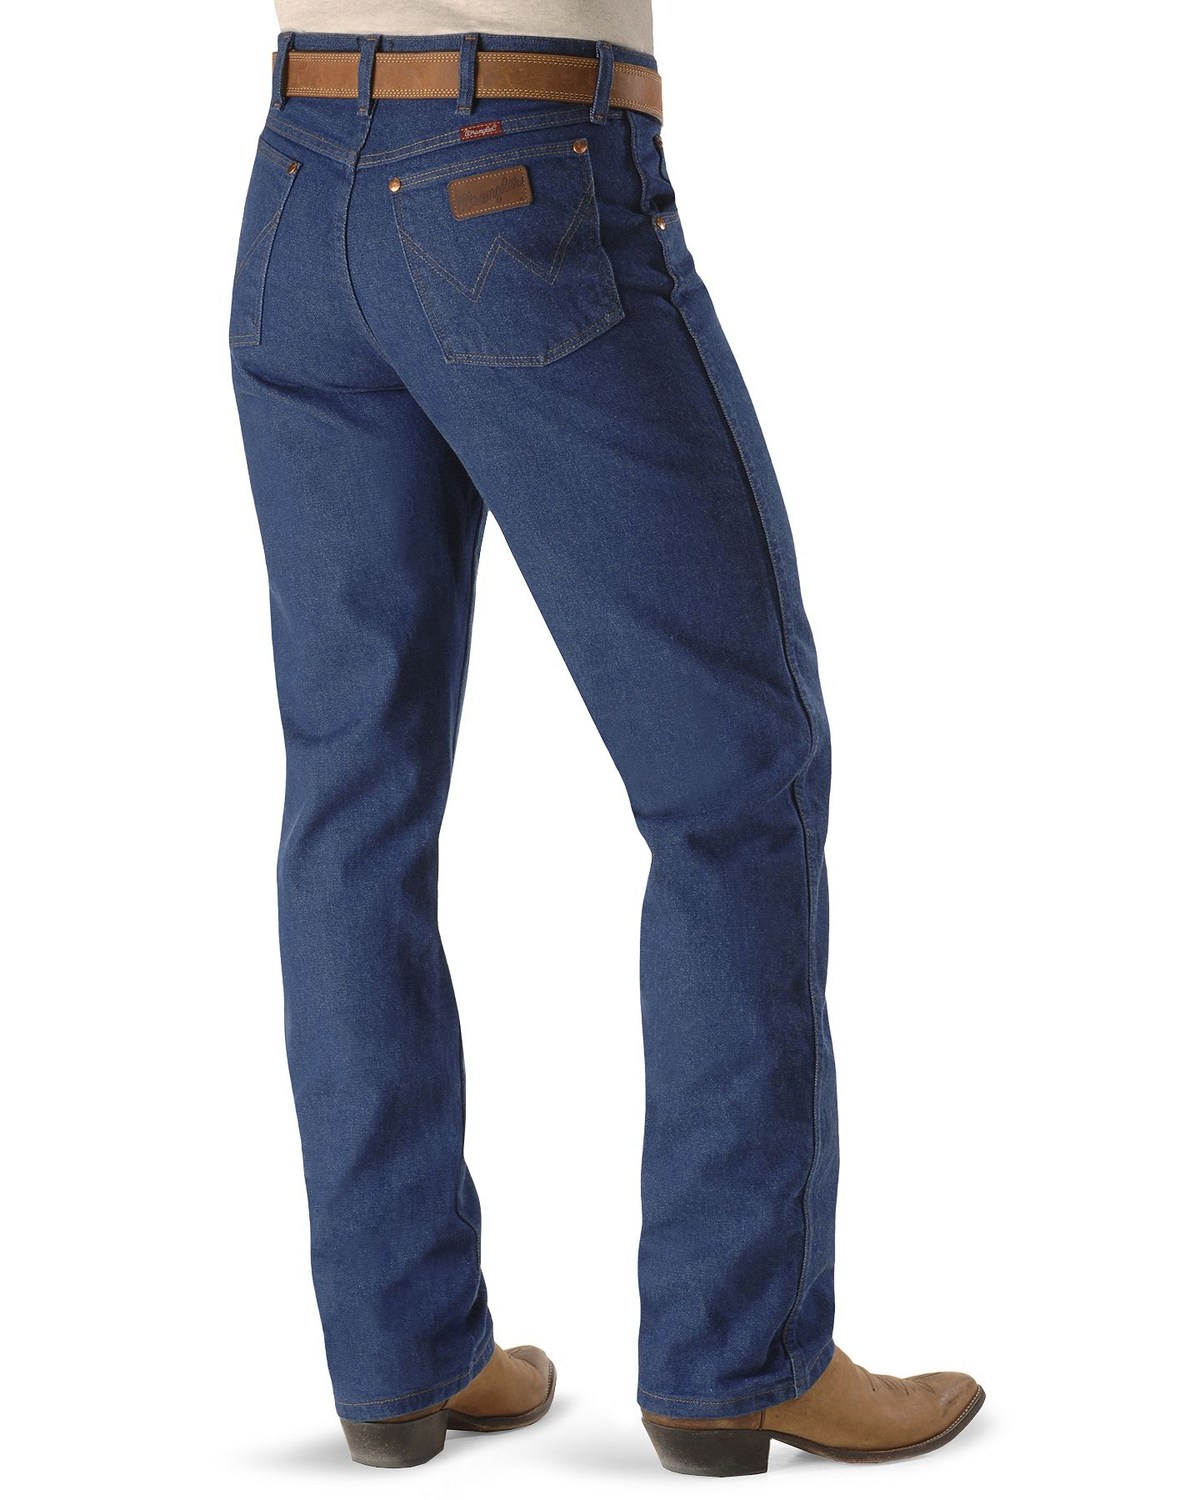 wrangler jeans online shopping